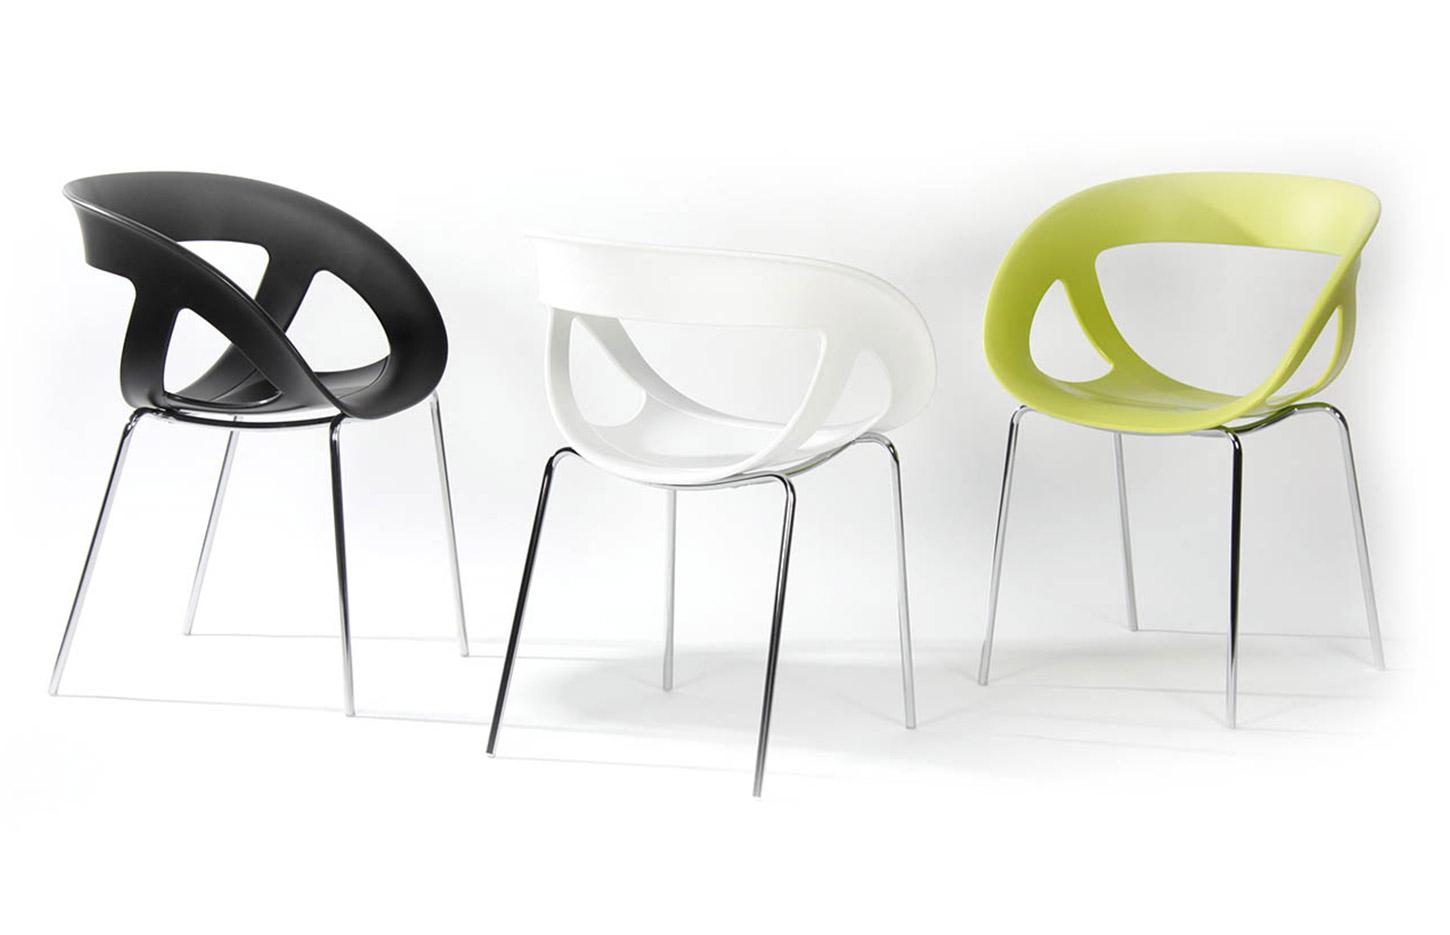 Chaise coque design ajourée polypropylène et structure chromé, Fabrication Française, gamme Helena, France Bureau